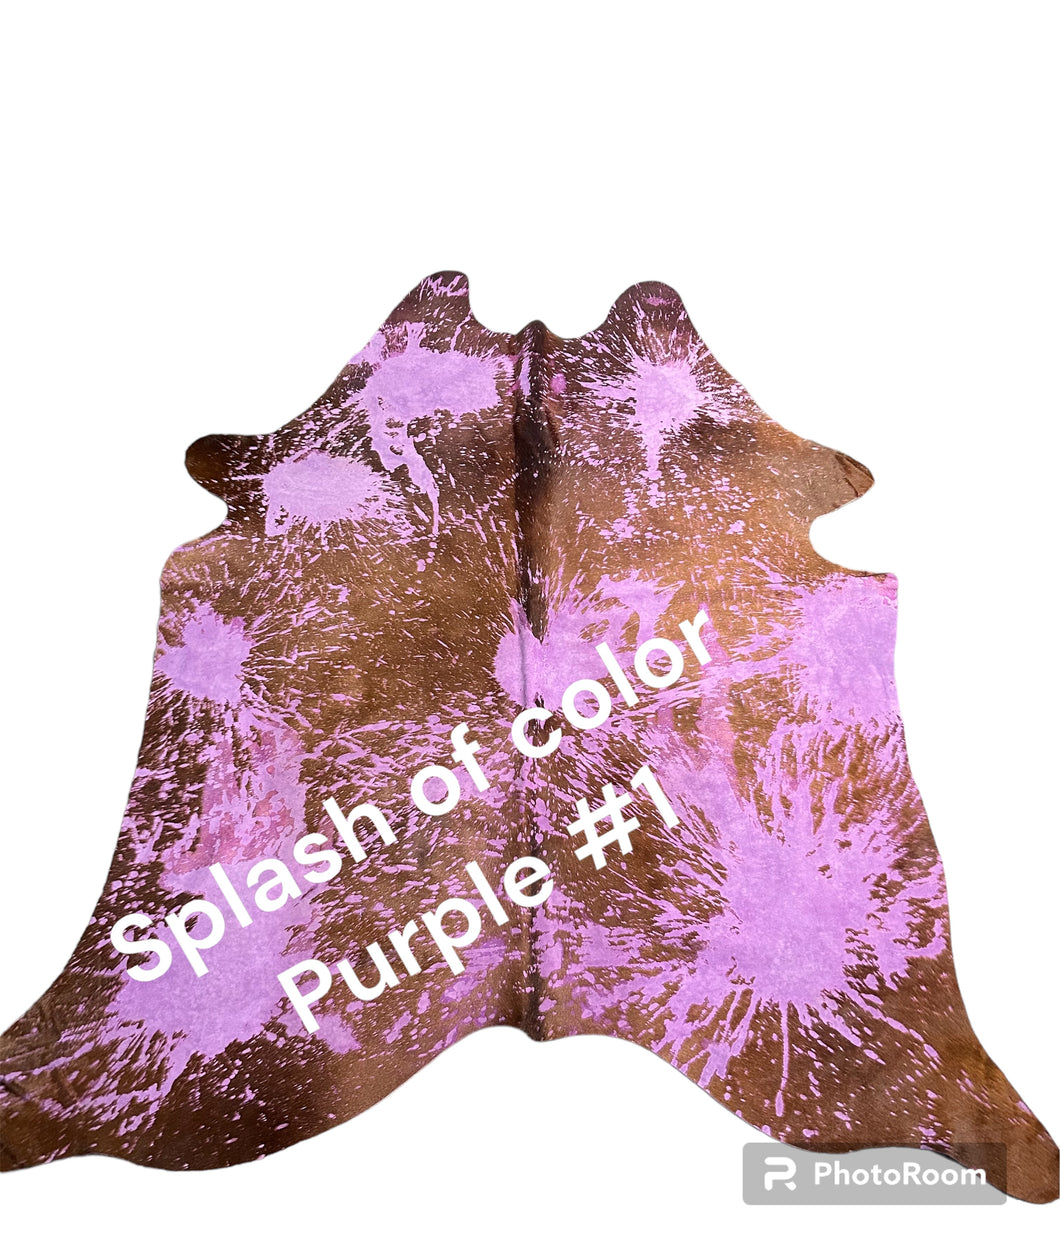 Purple Splash of Color hides